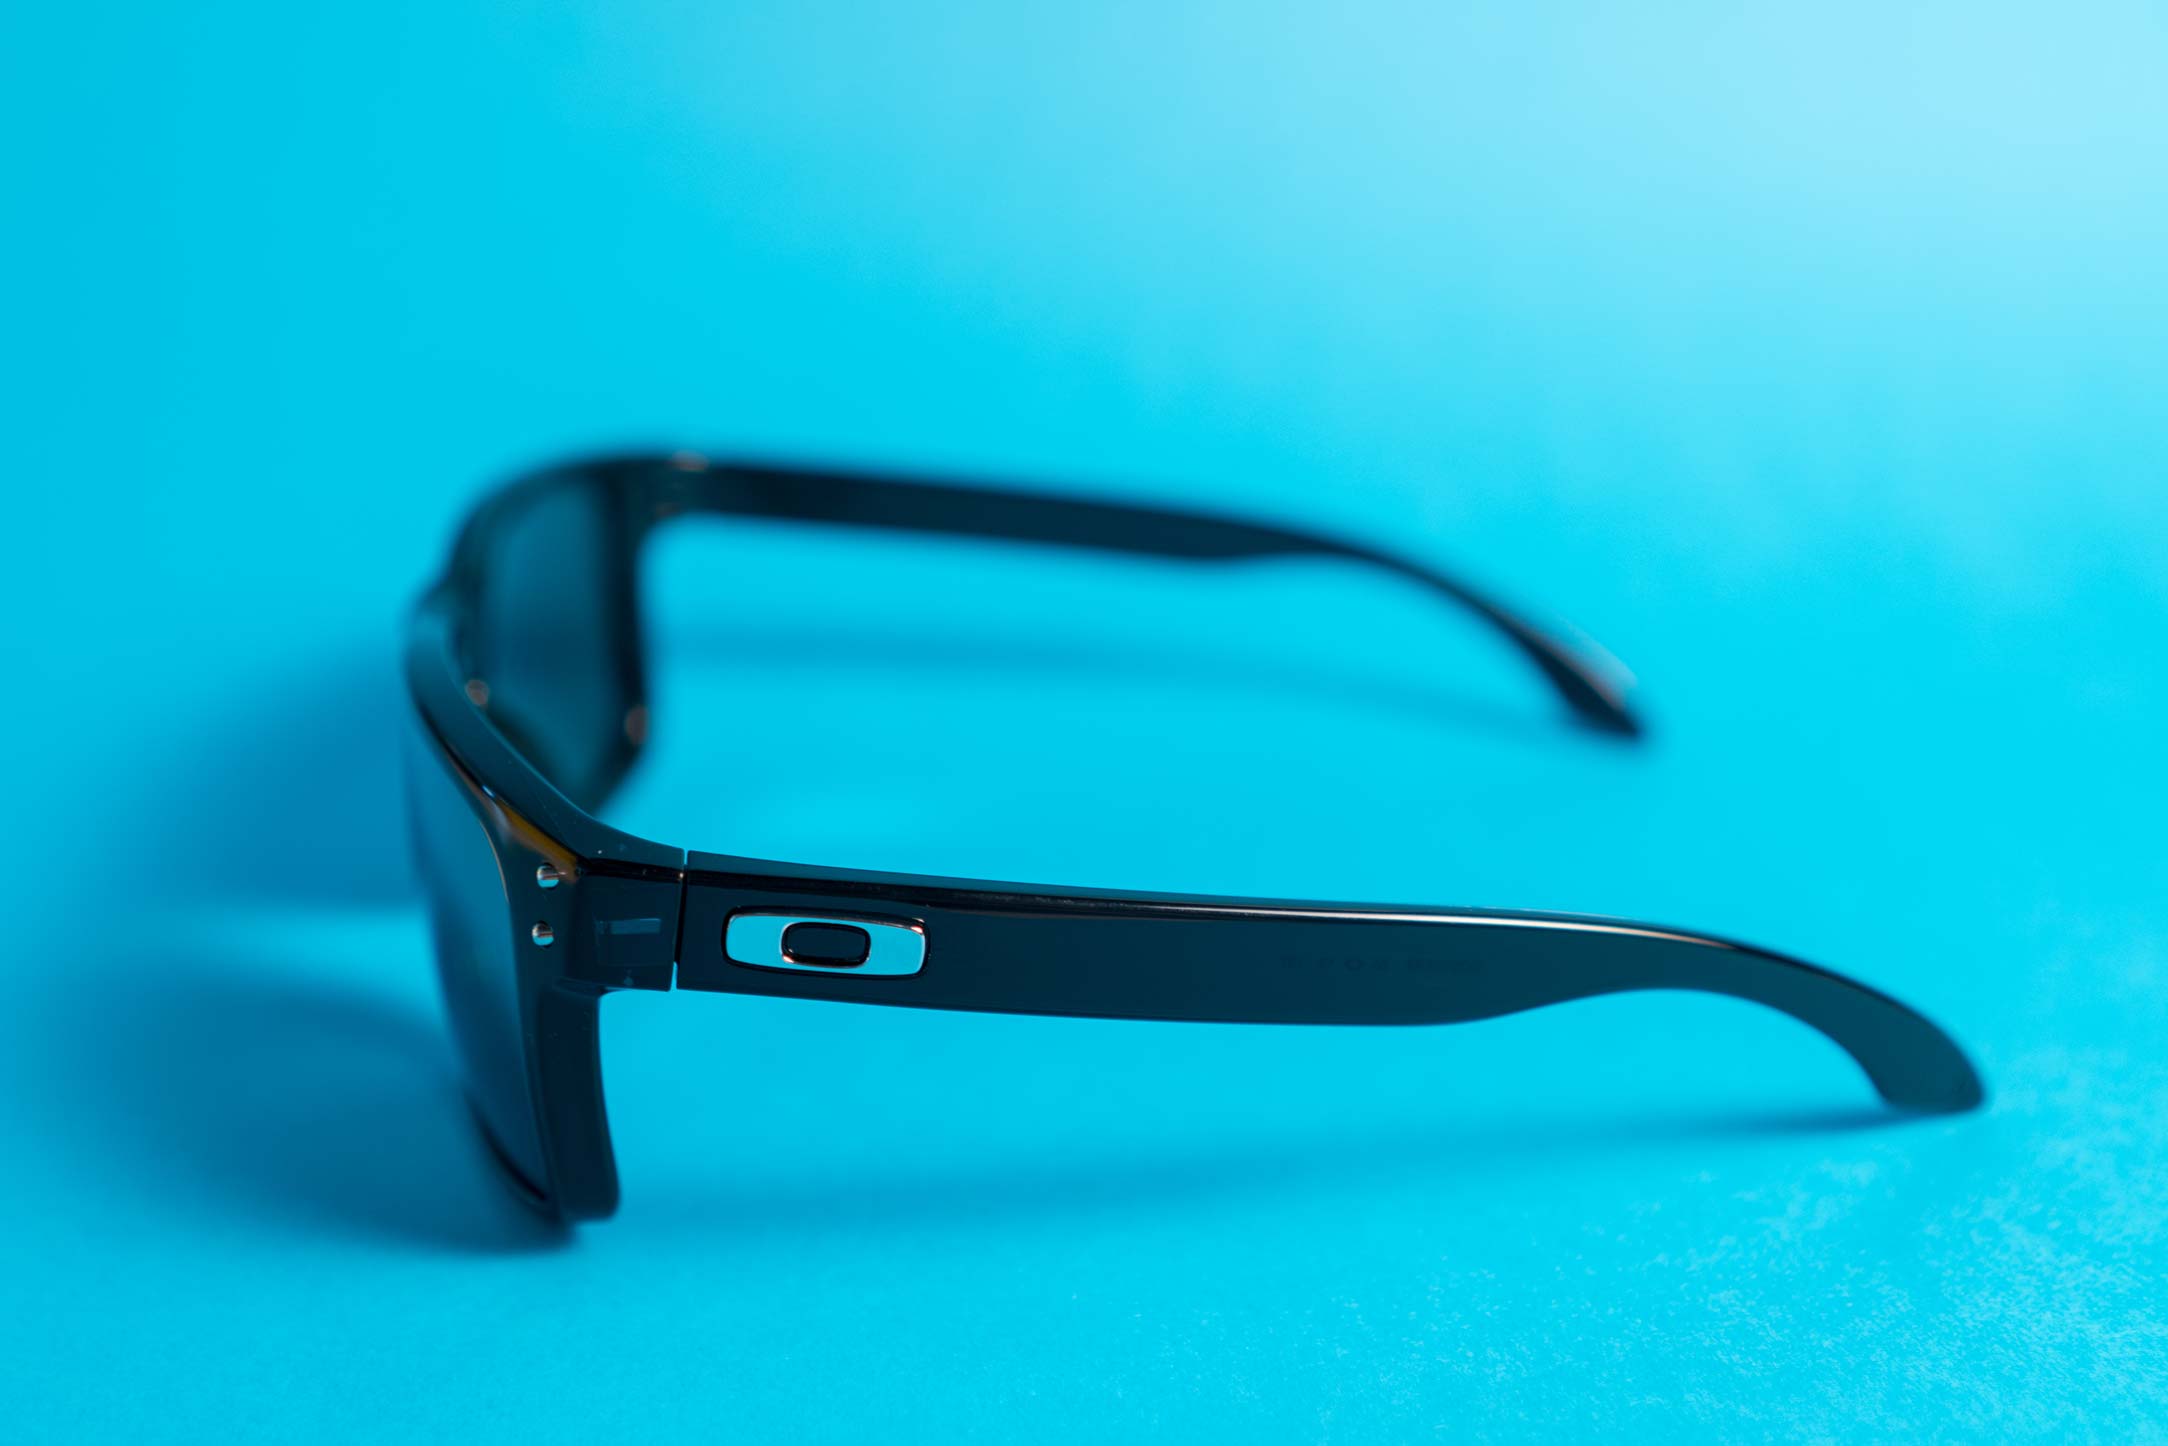 Jak rozpoznać oryginalne logo okularów przeciwsłonecznych Oakley?